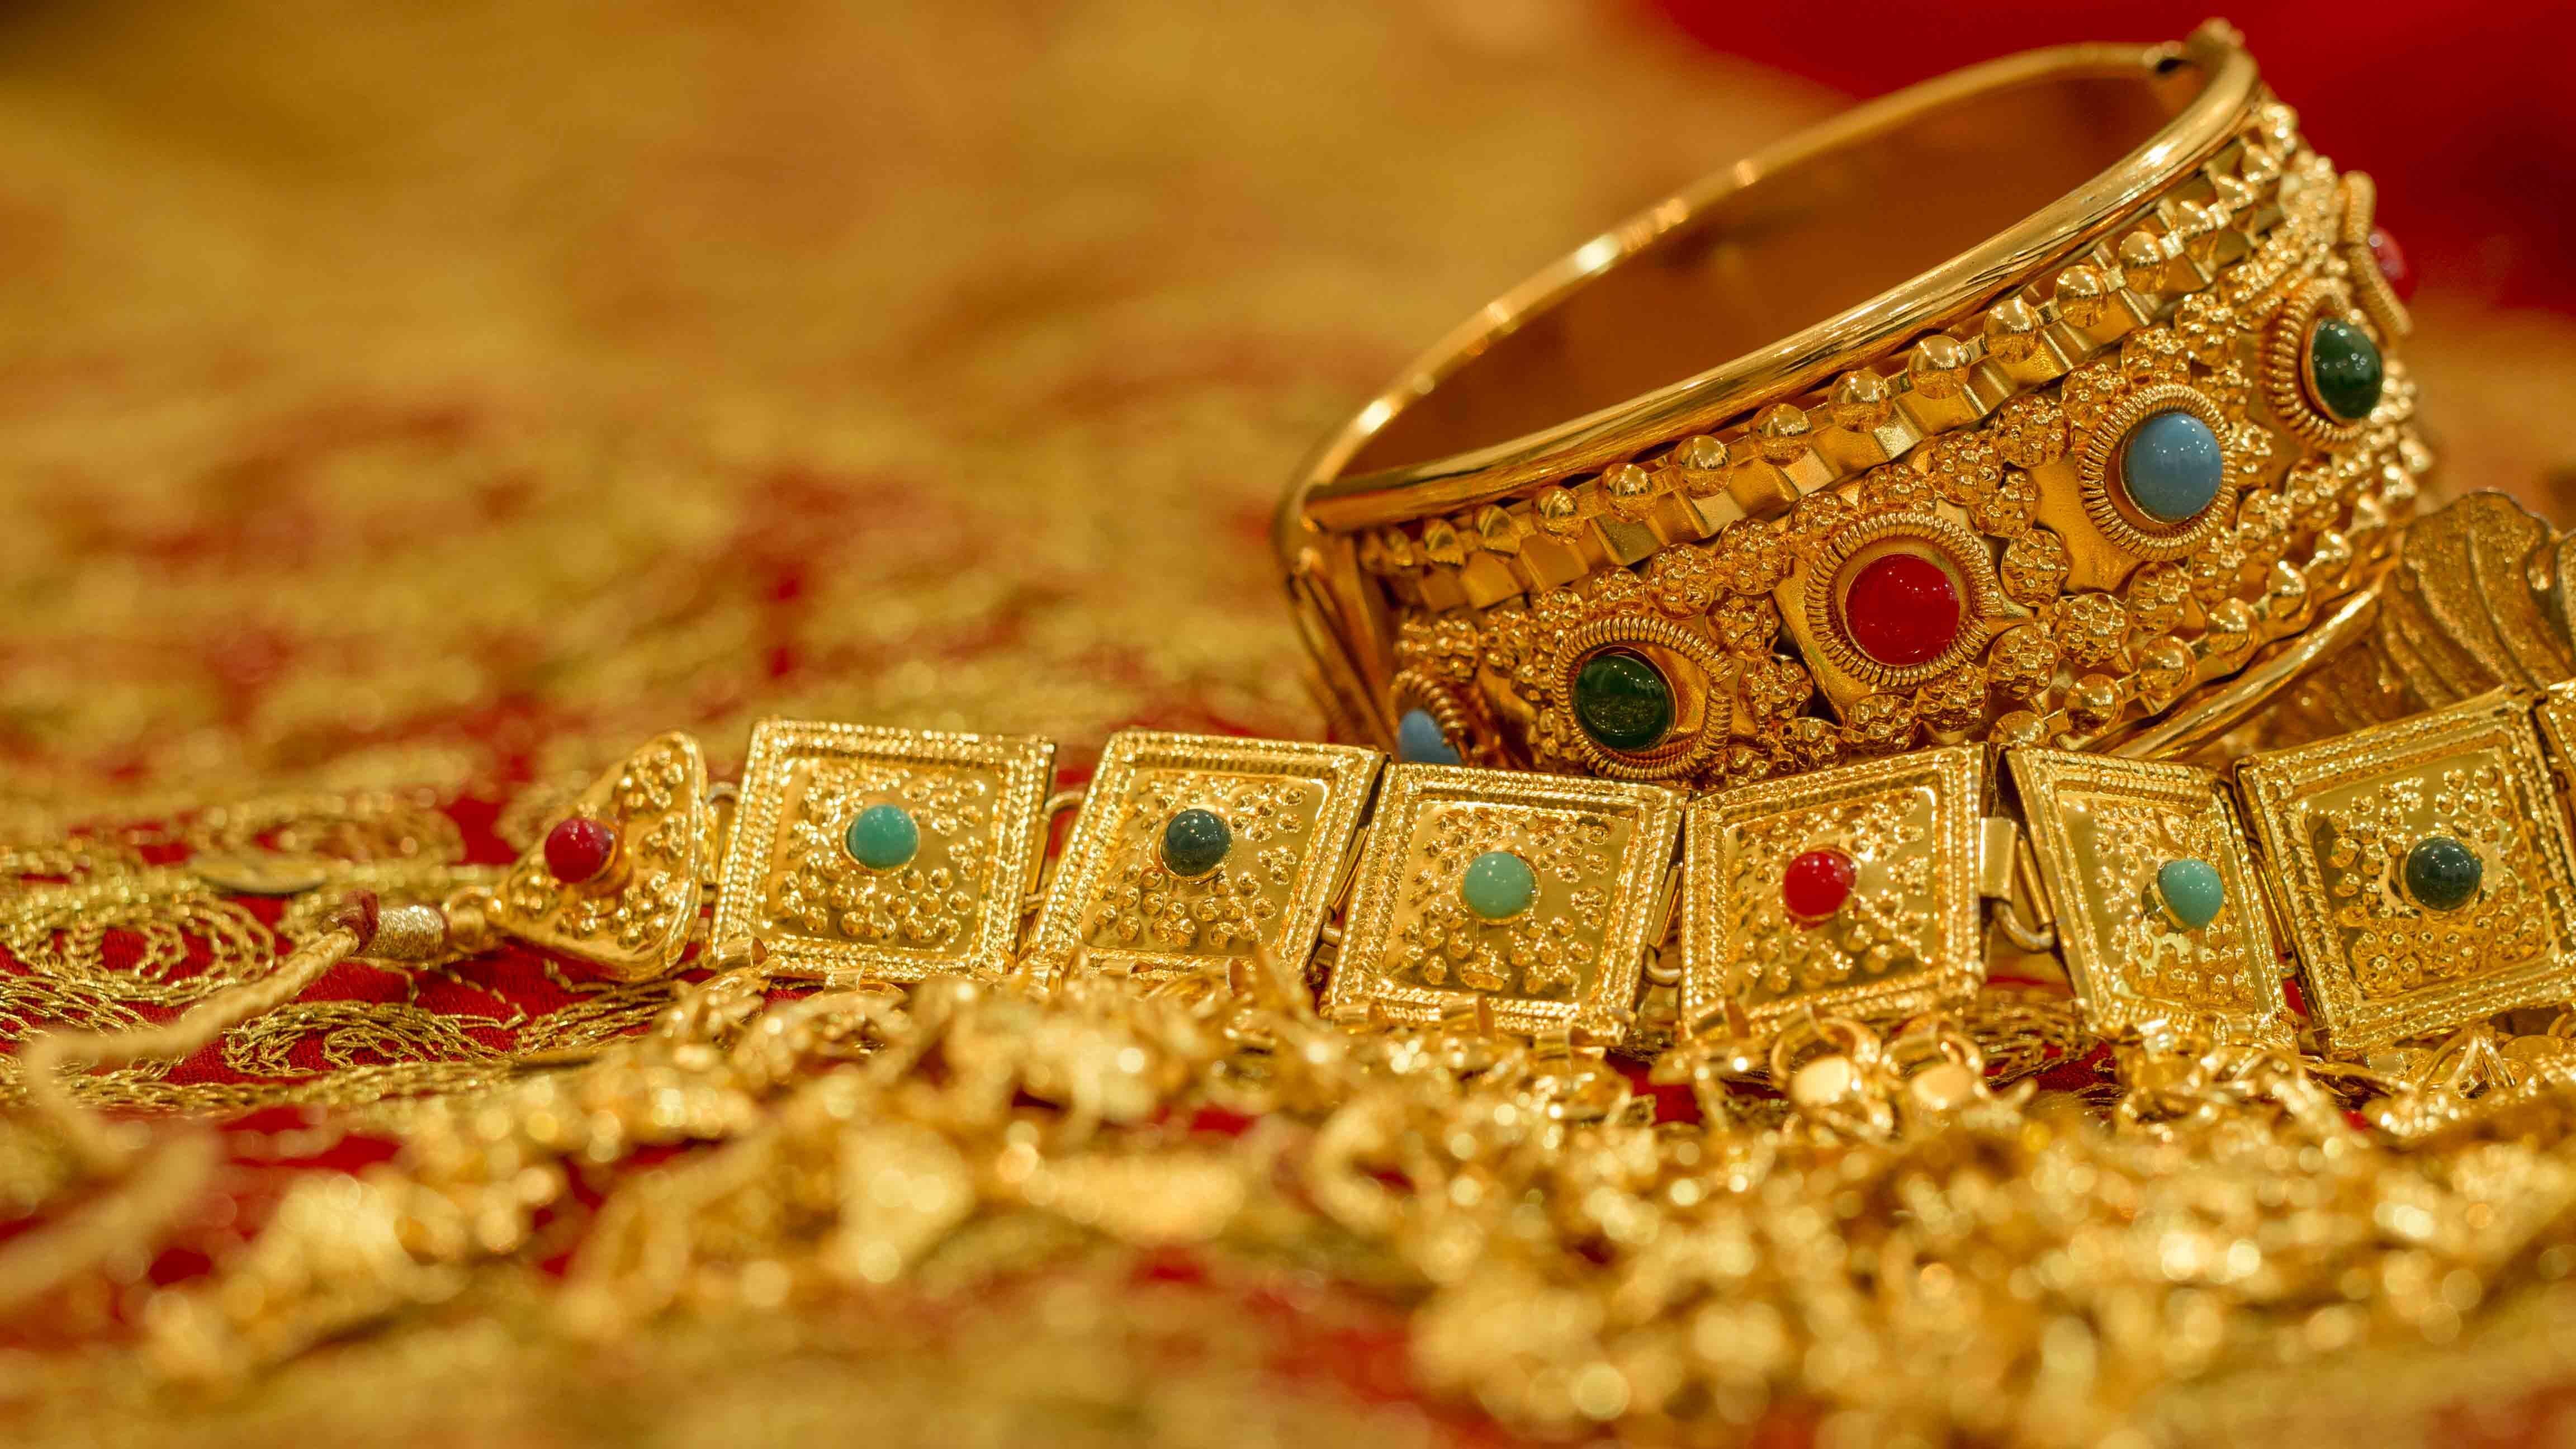 Gold Silver Price : লক্ষ্মীবারে সোনা কিনে ঘরে আনুন সমৃদ্ধি, জেনে নিন বাংলায় আজ কত সোনা-রুপোর দাম